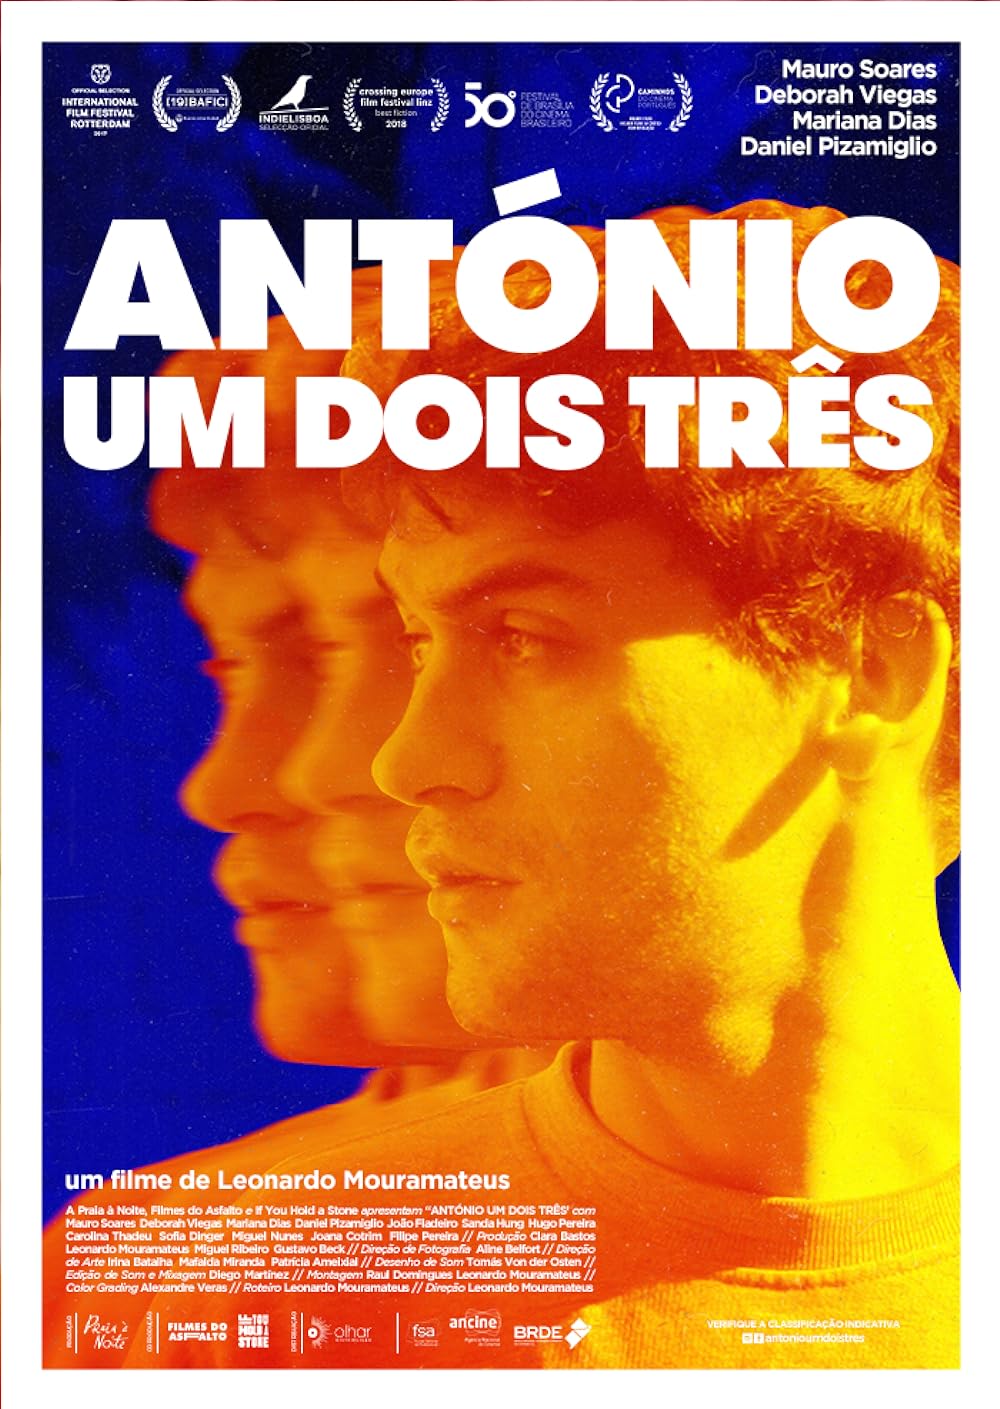 постер Антонио ум дойс трес